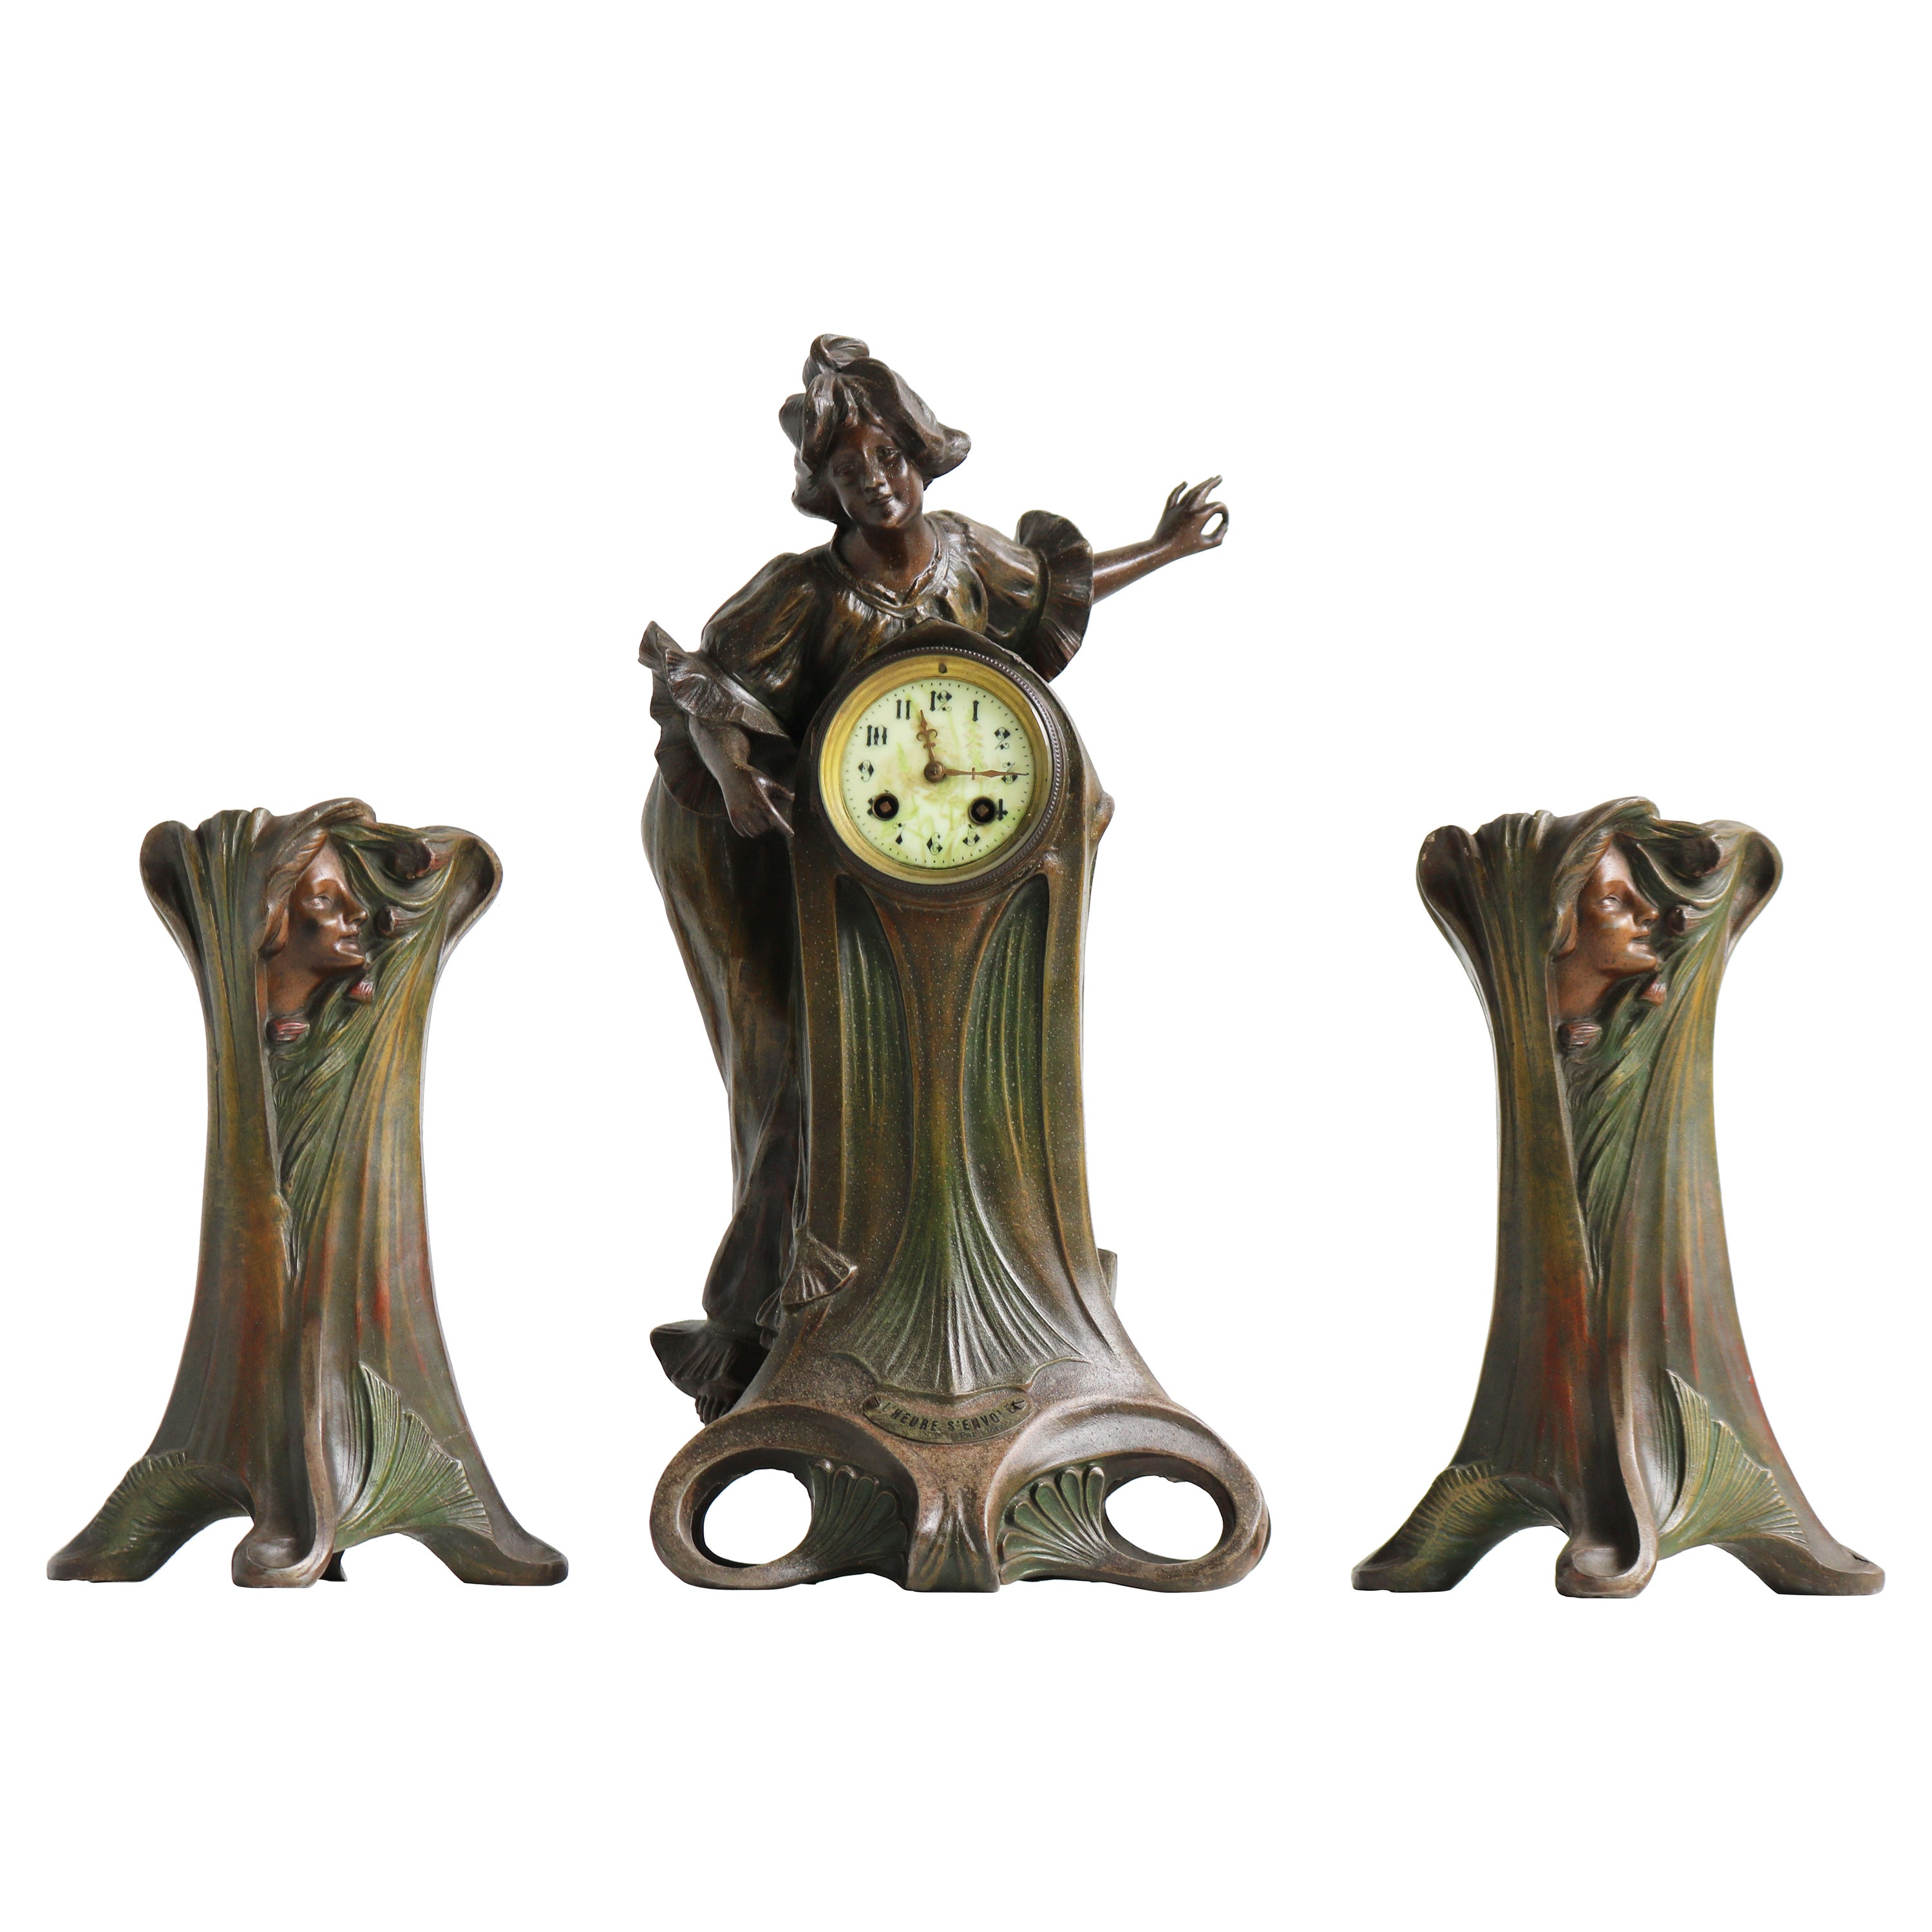 Art Nouveau Clock Set by Francesco Flora 1890 Antique Three Piece French Mantel For Sale